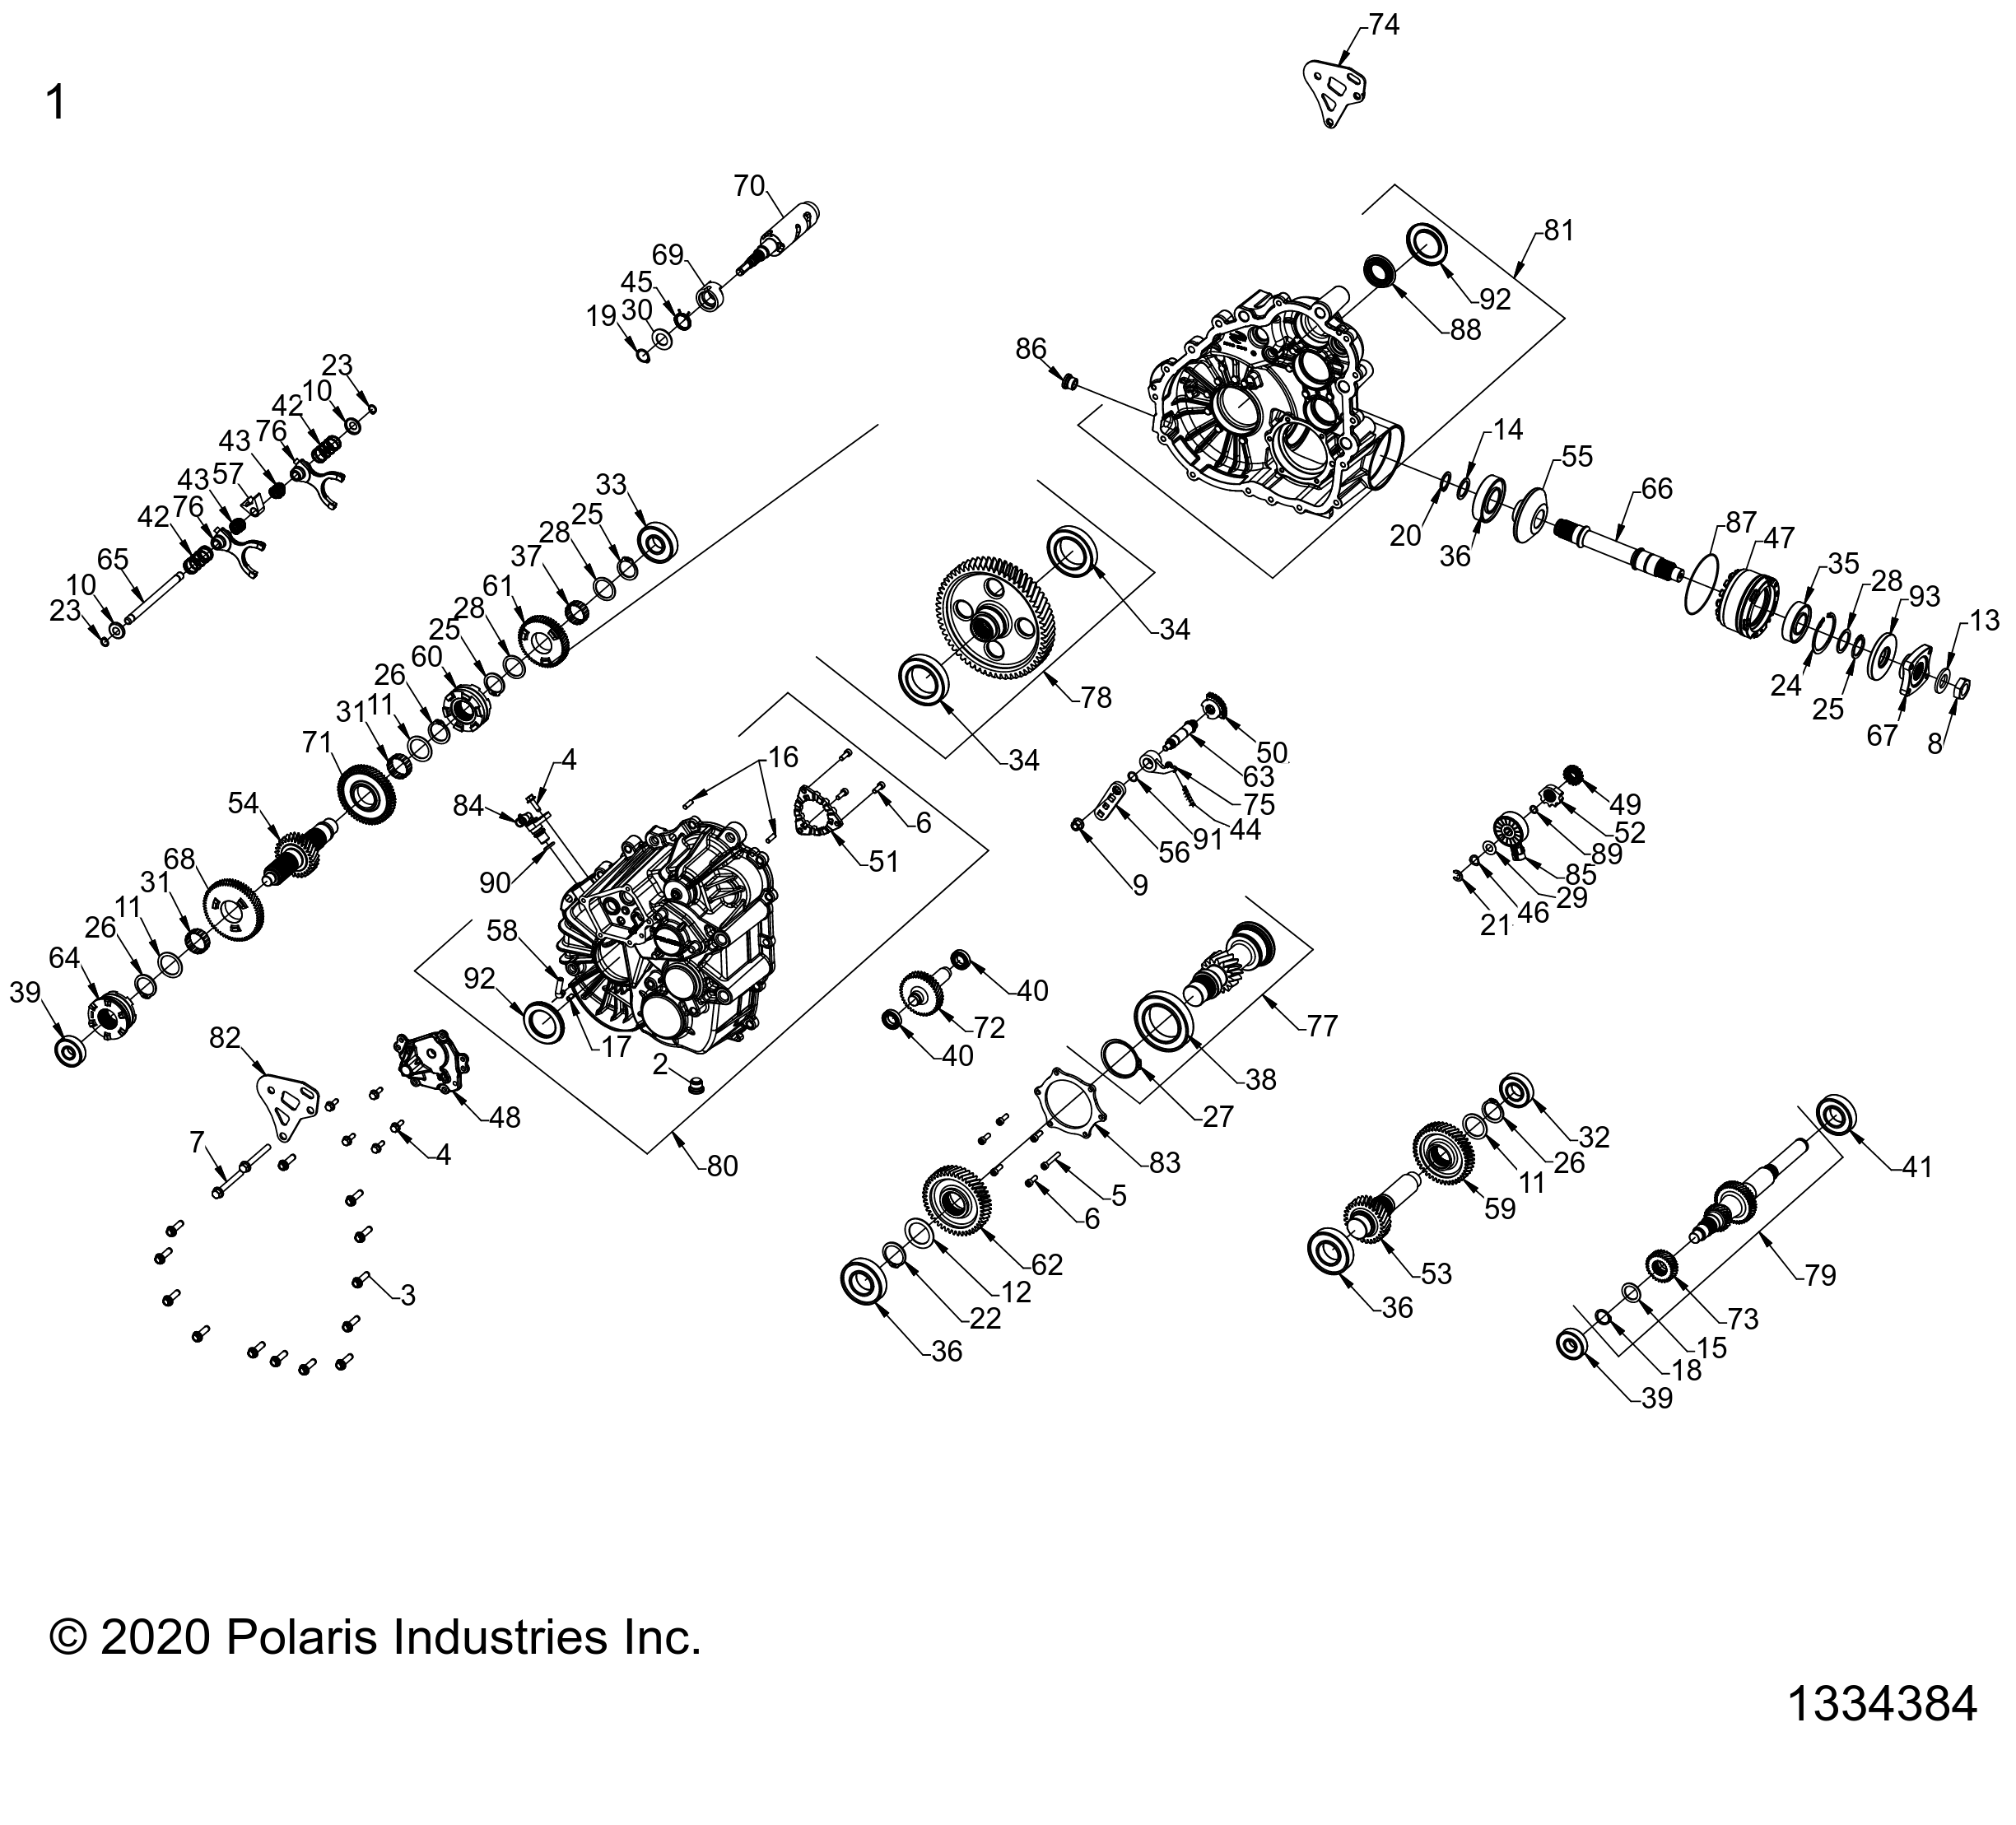 Foto diagrama Polaris que contem a peça 3235989